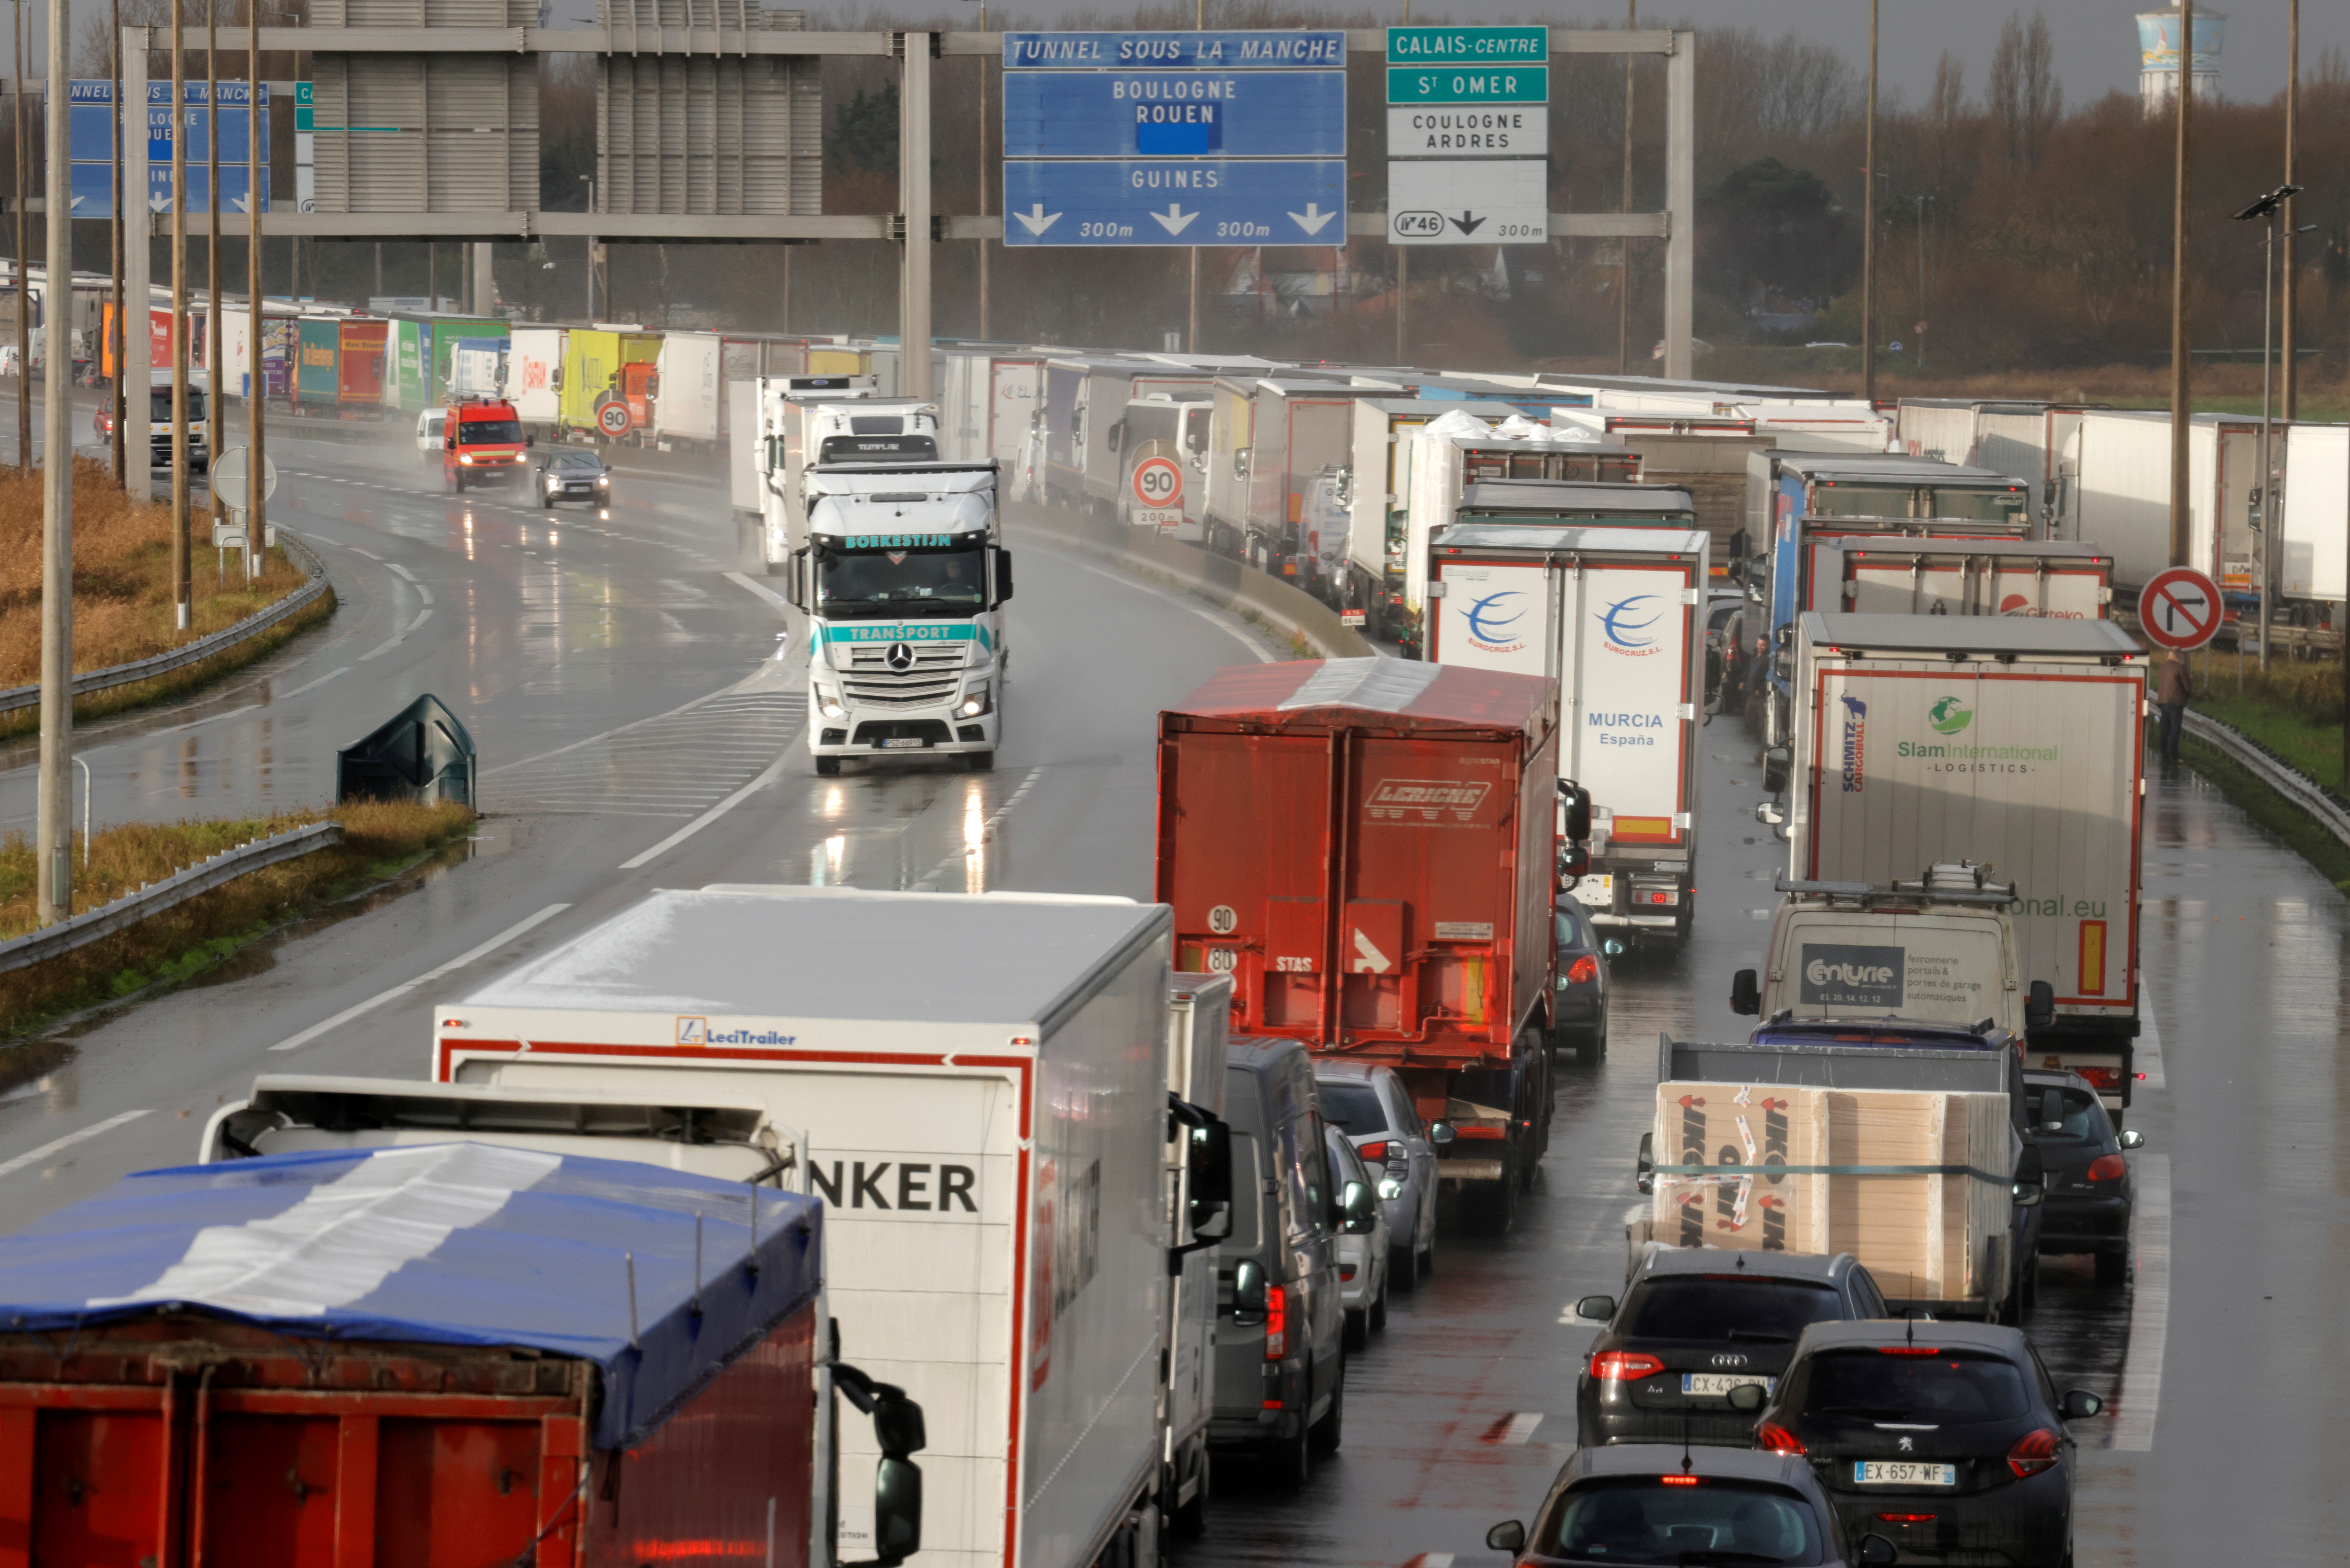 Transport routier: une directive française pour rééquilibrer les relations entre plateformes numériques et transporteurs